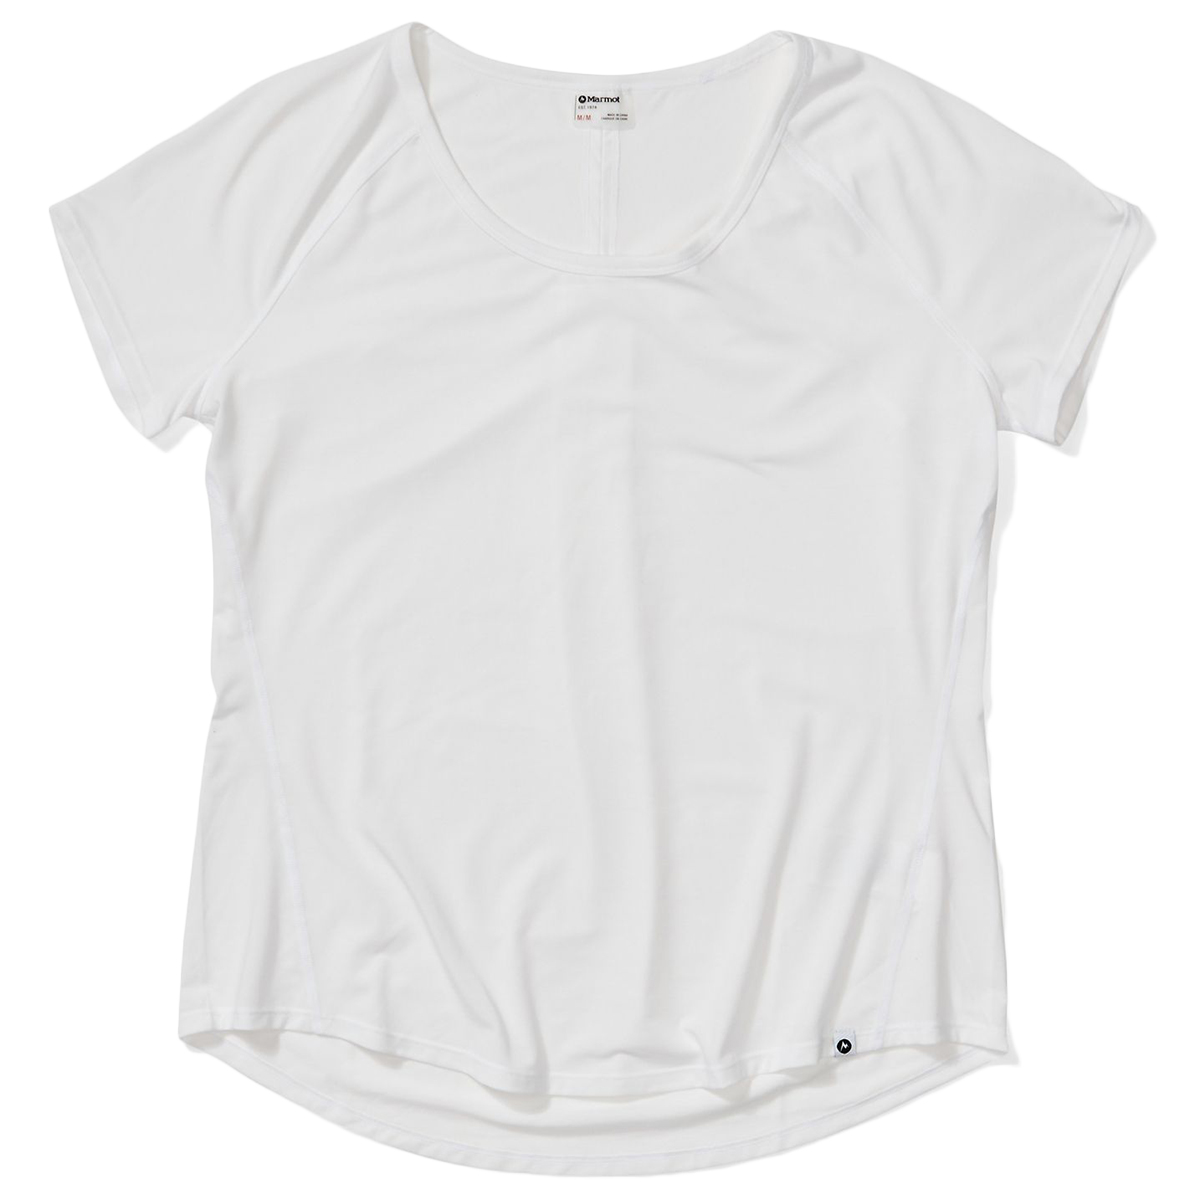 Marmot Women's Neaera Short-Sleeve Shirt - White, S